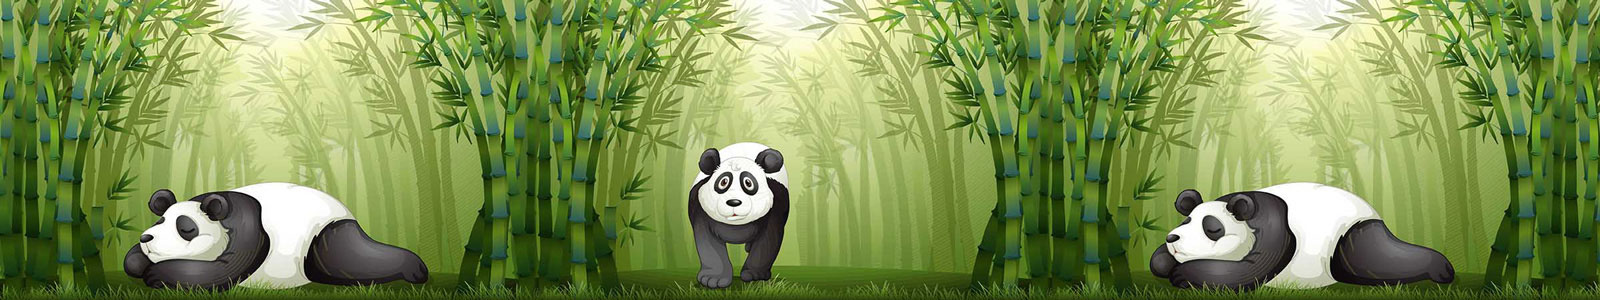 №3285 - Панда в бамбуковом лесу, иллюстрация